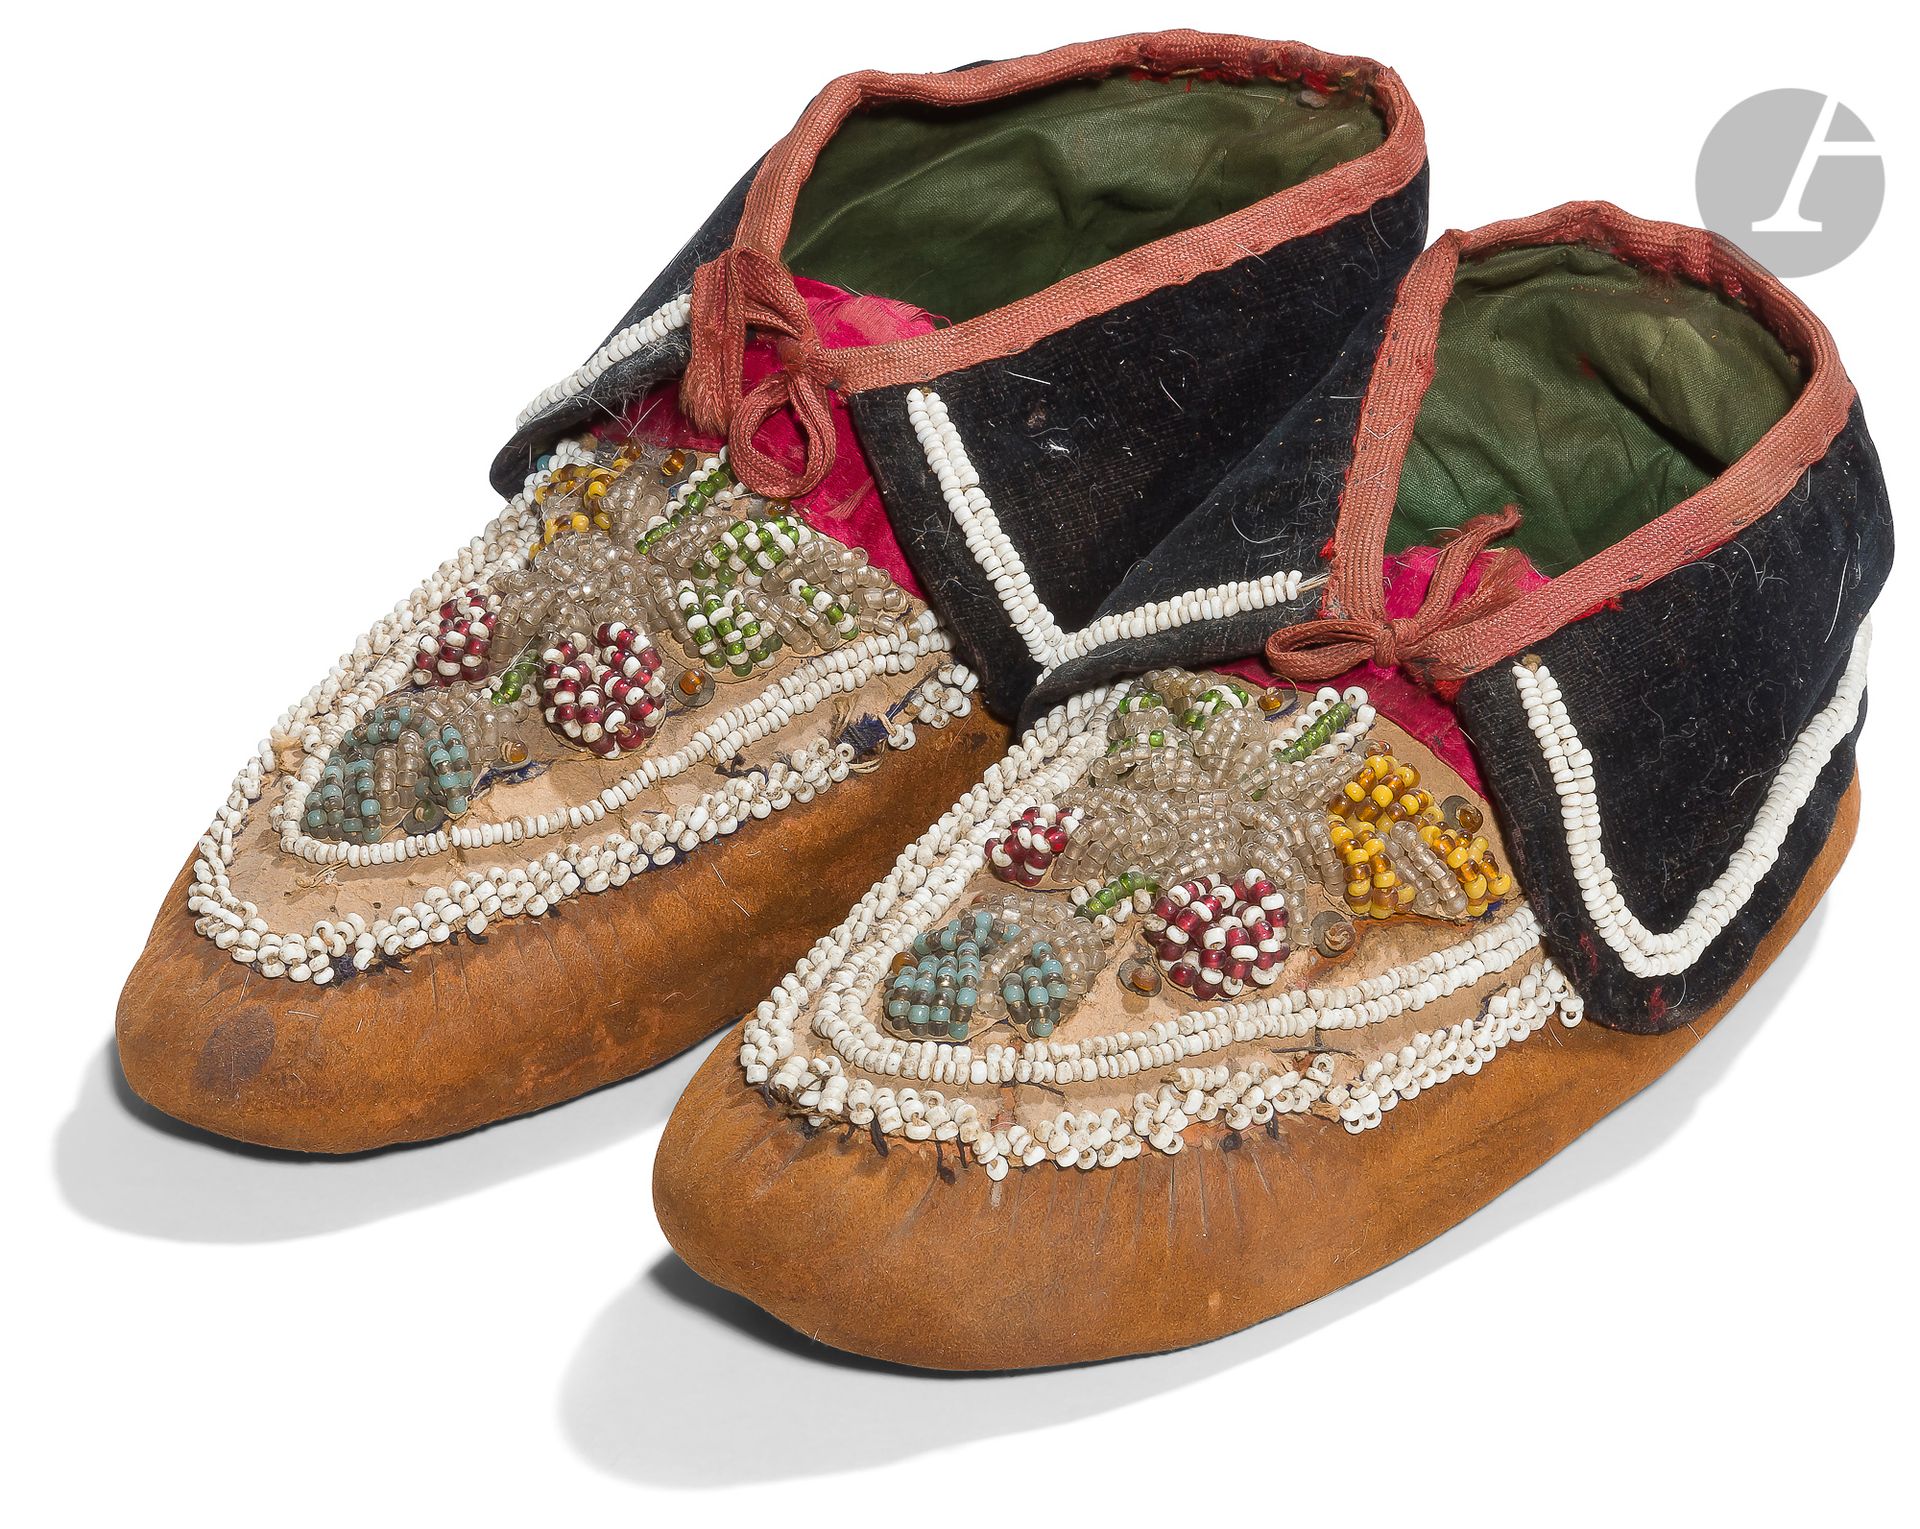 Null 一对平原印第安人的软皮鞋。
由皮肤制成，顶部装饰有多色的珠子花束。
B.E. 20世纪。